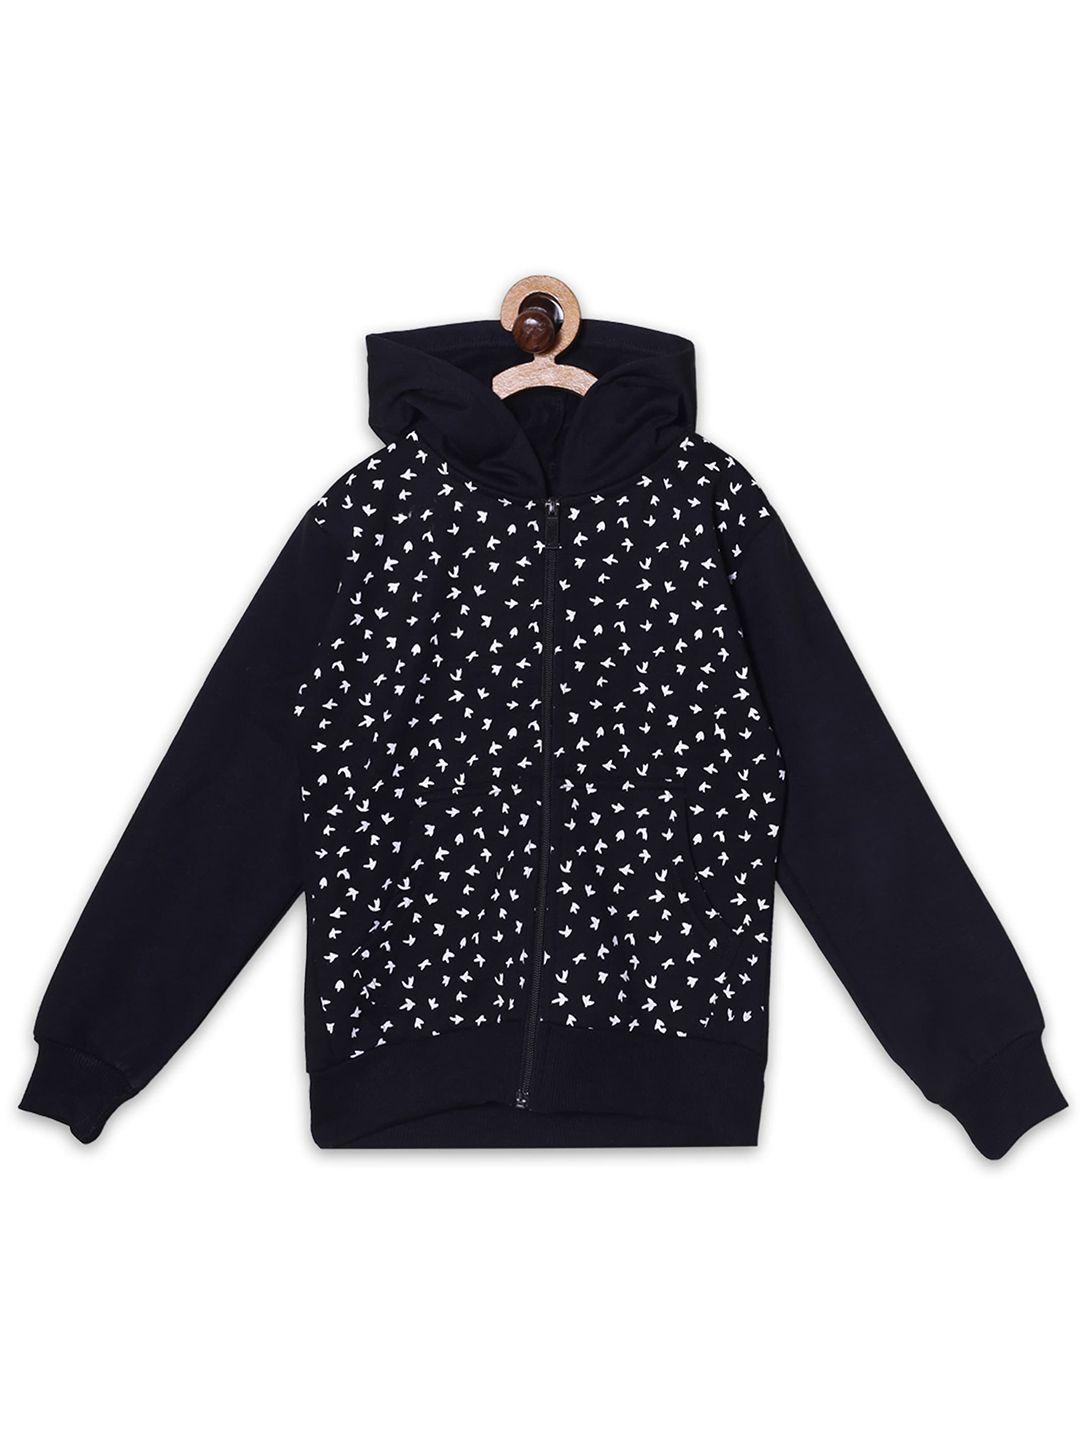 fashionable-boys-geometric-printed-fleece-hooded-front-open-sweatshirt